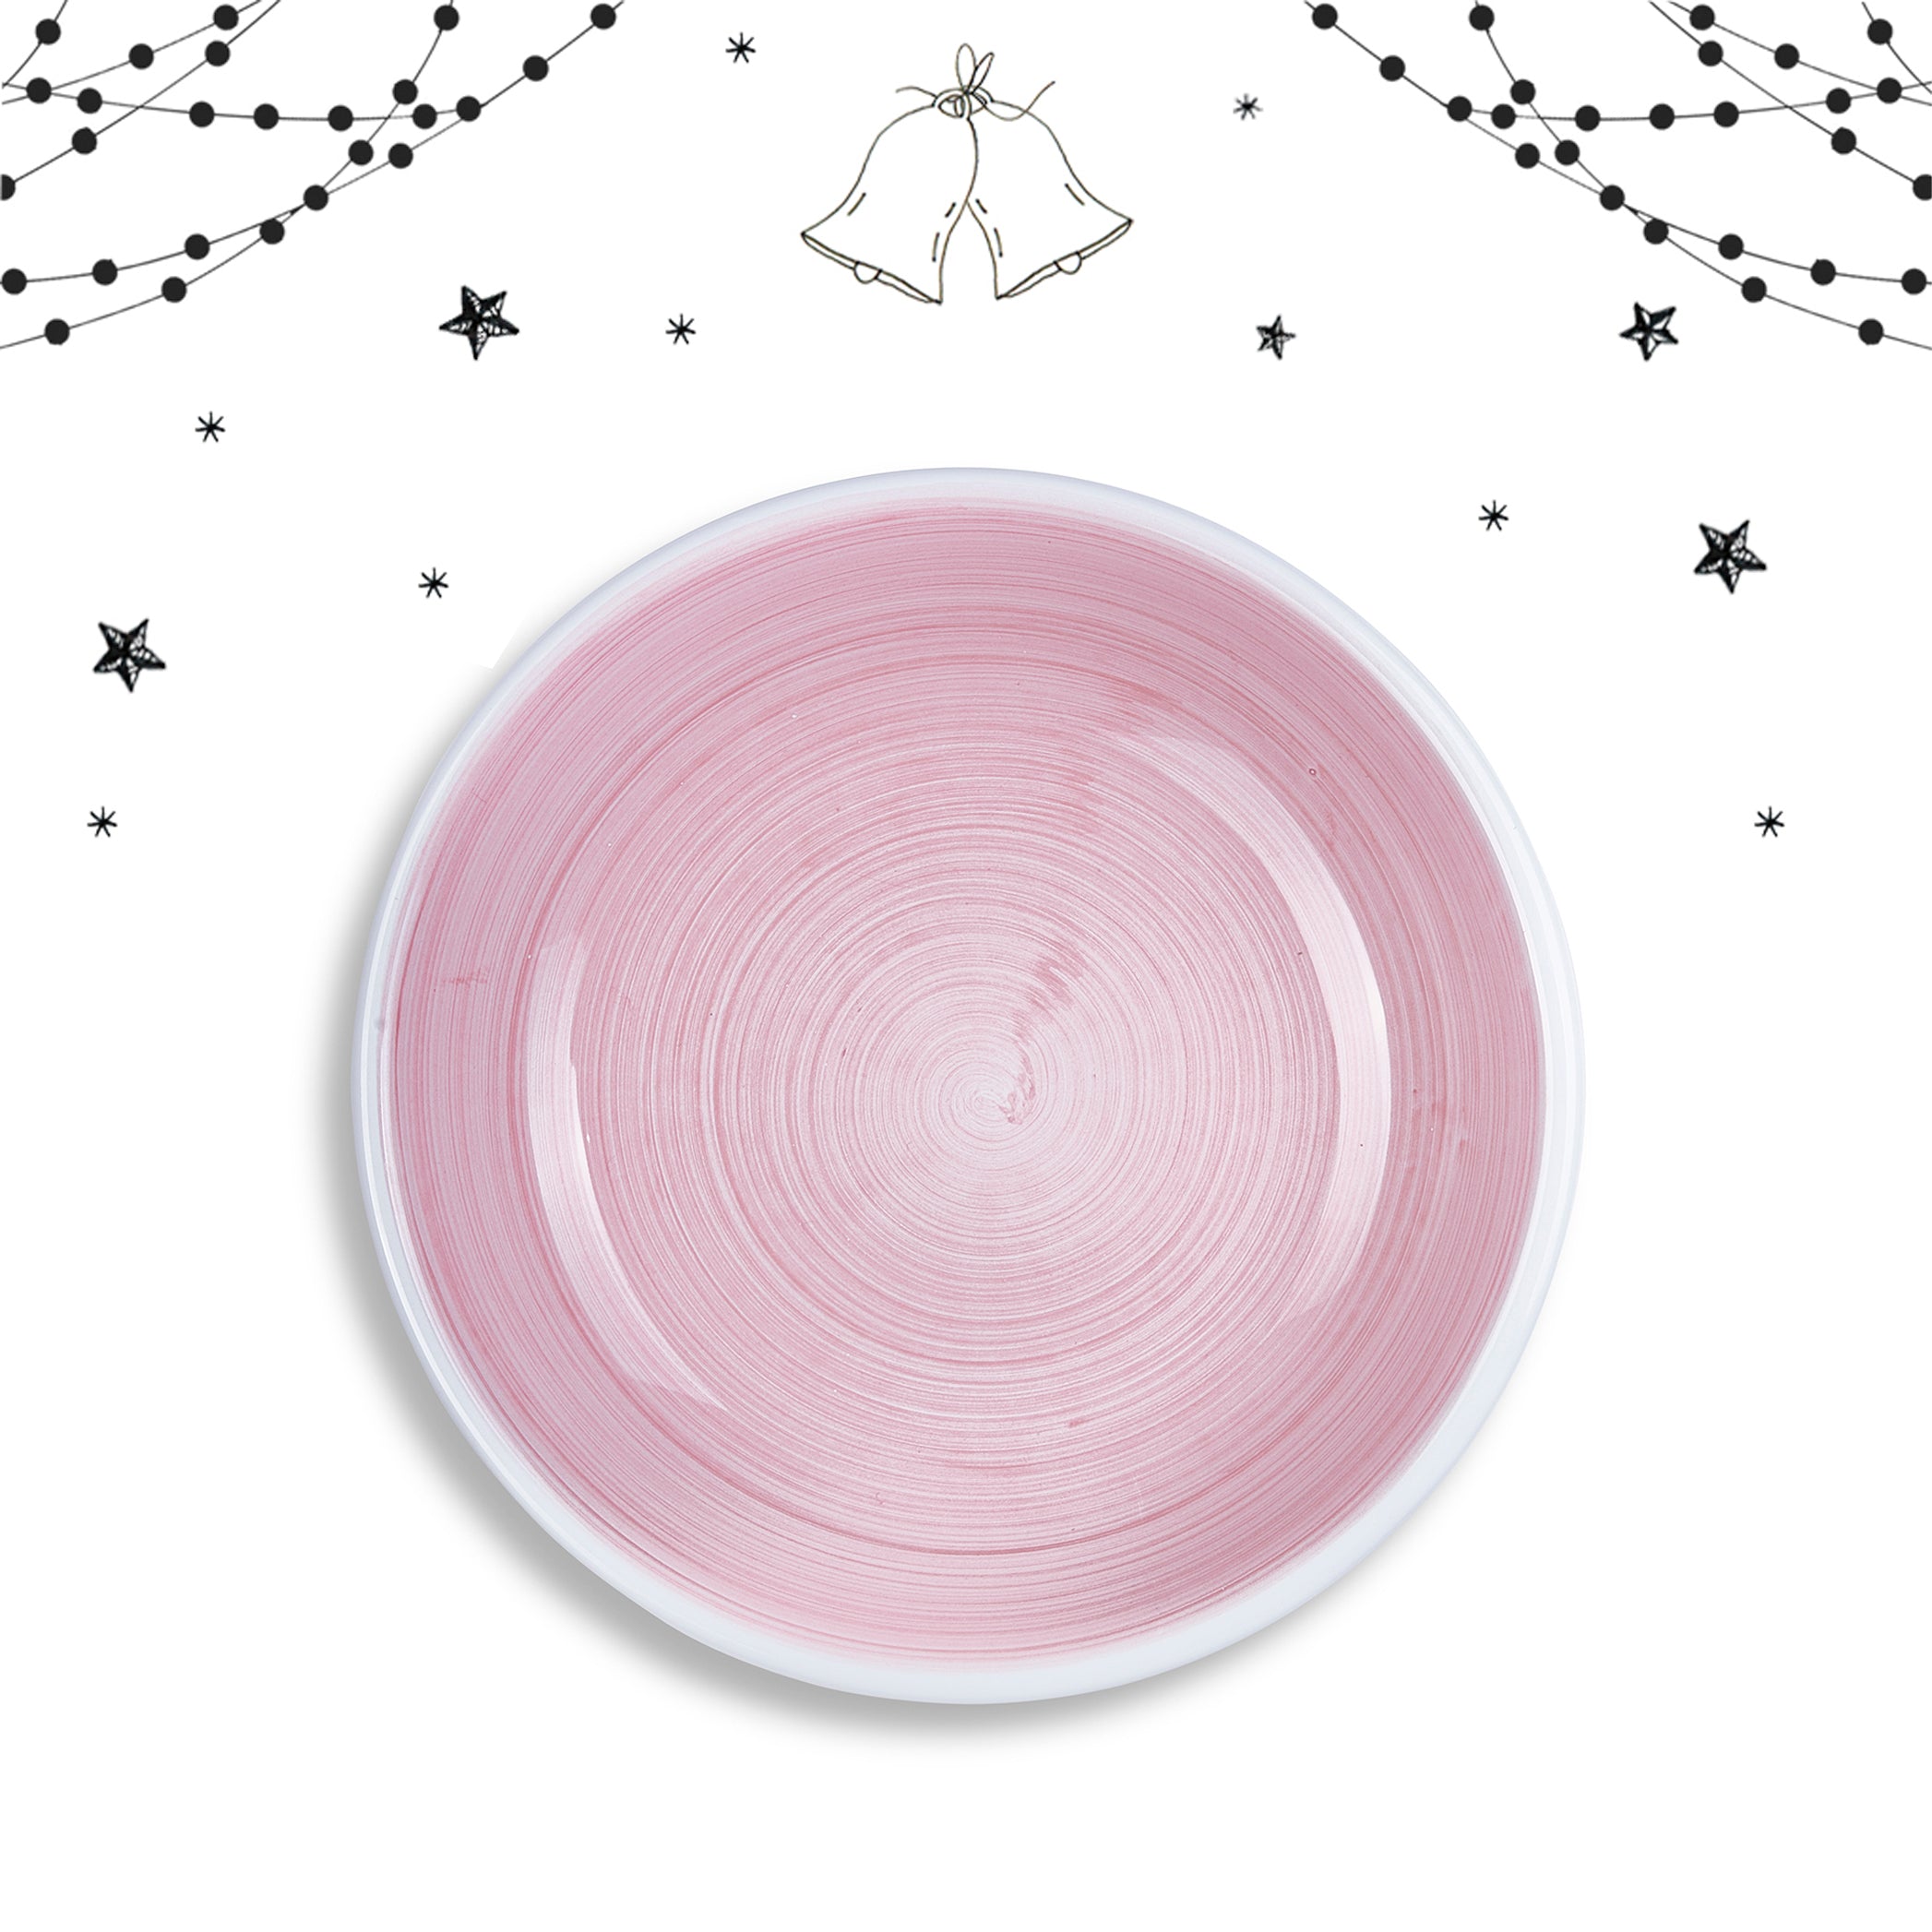 S&B 'Brushed' Ceramic Pasta Bowl in Pastel Pink, 22cm